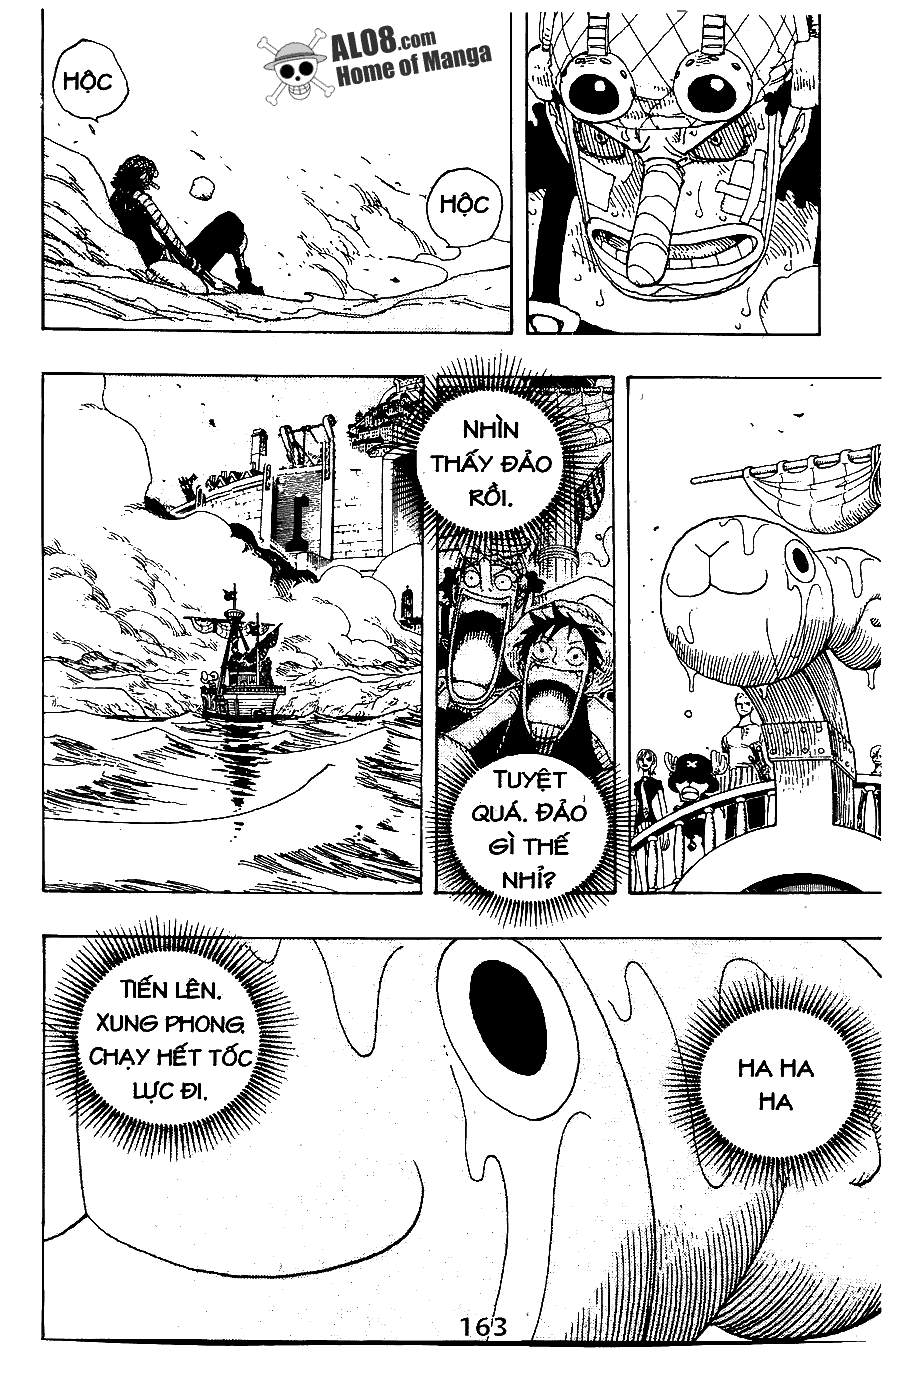 [Event] Gởi gắm tình cảm đến Luffy!! - Page 2 IMG_0161